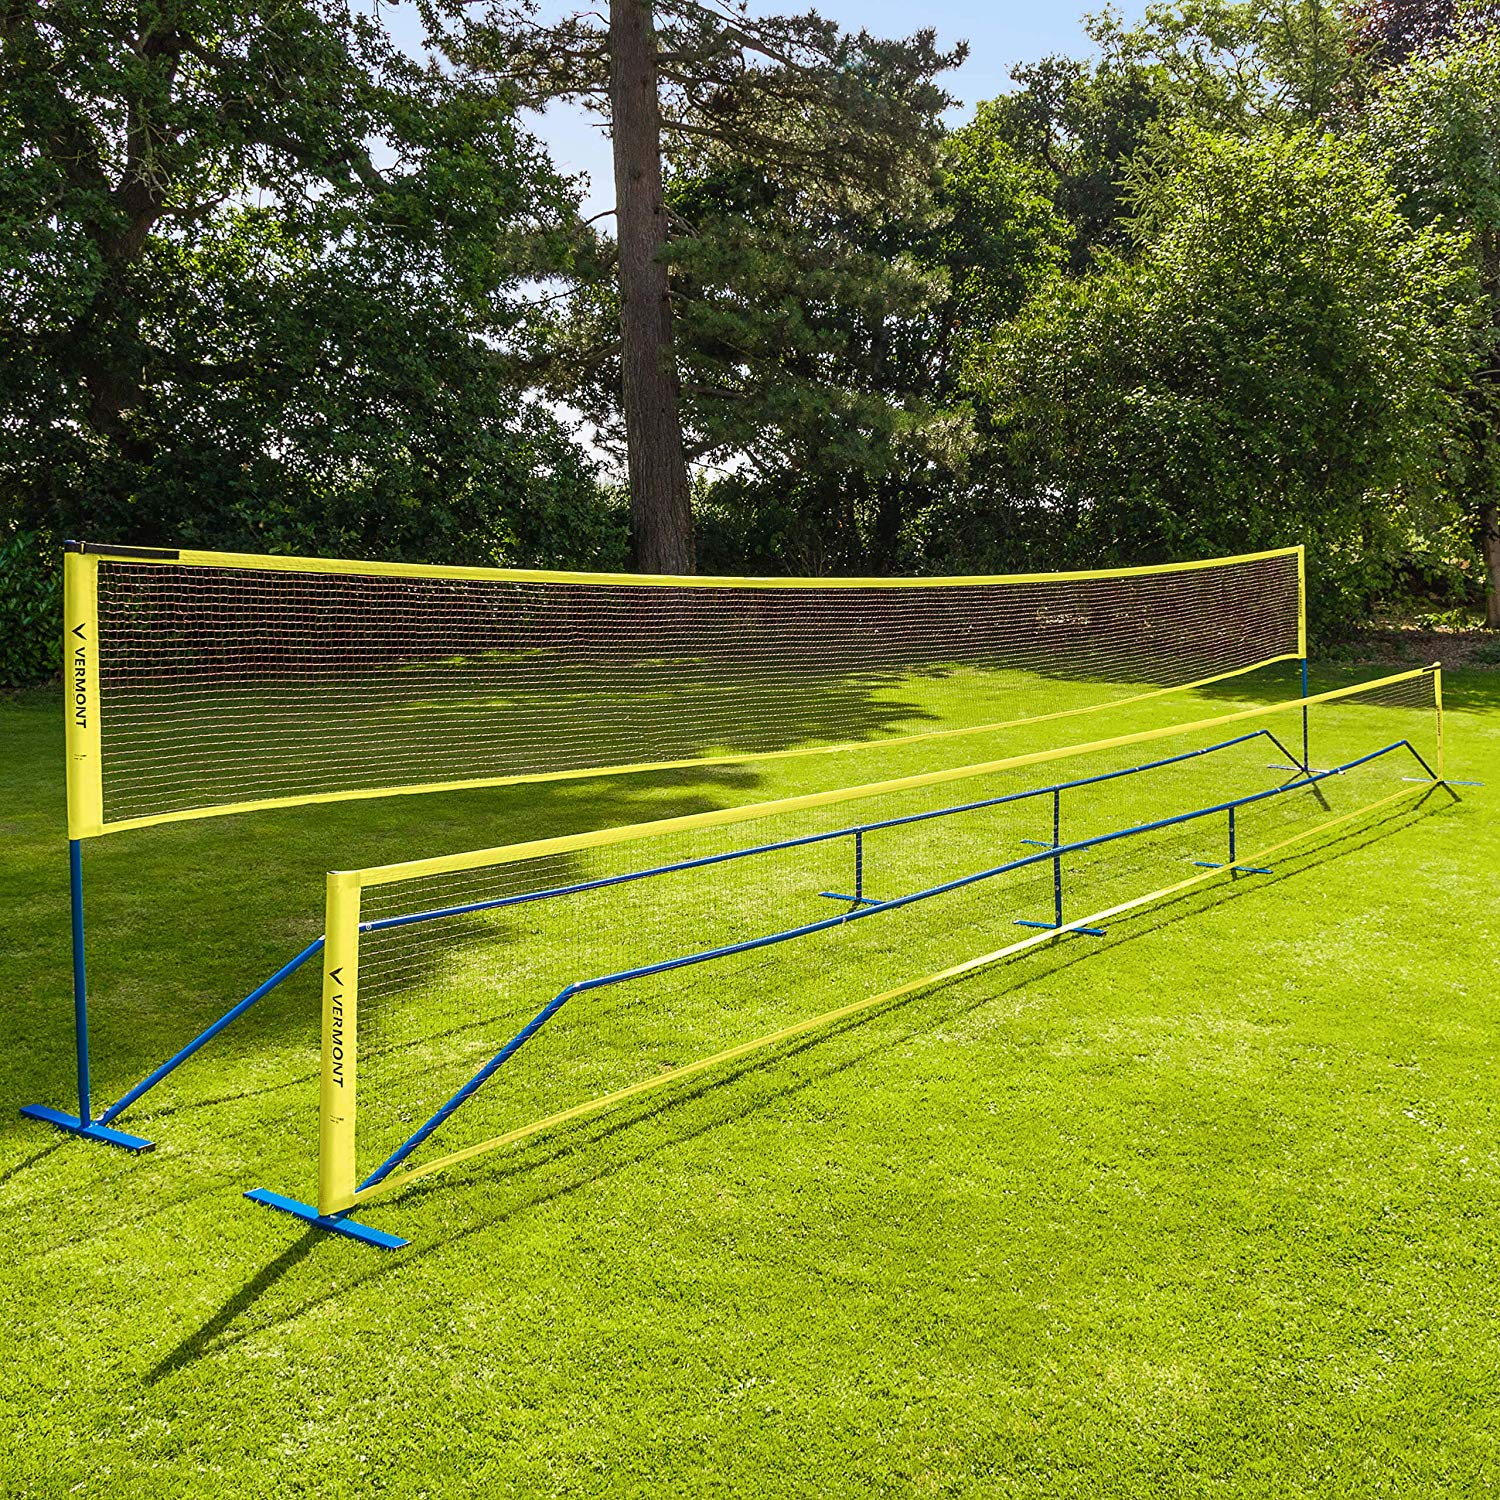 Professional 20‘ Standard Training Badminton Net Outdoor Garden Sport Replace UK 